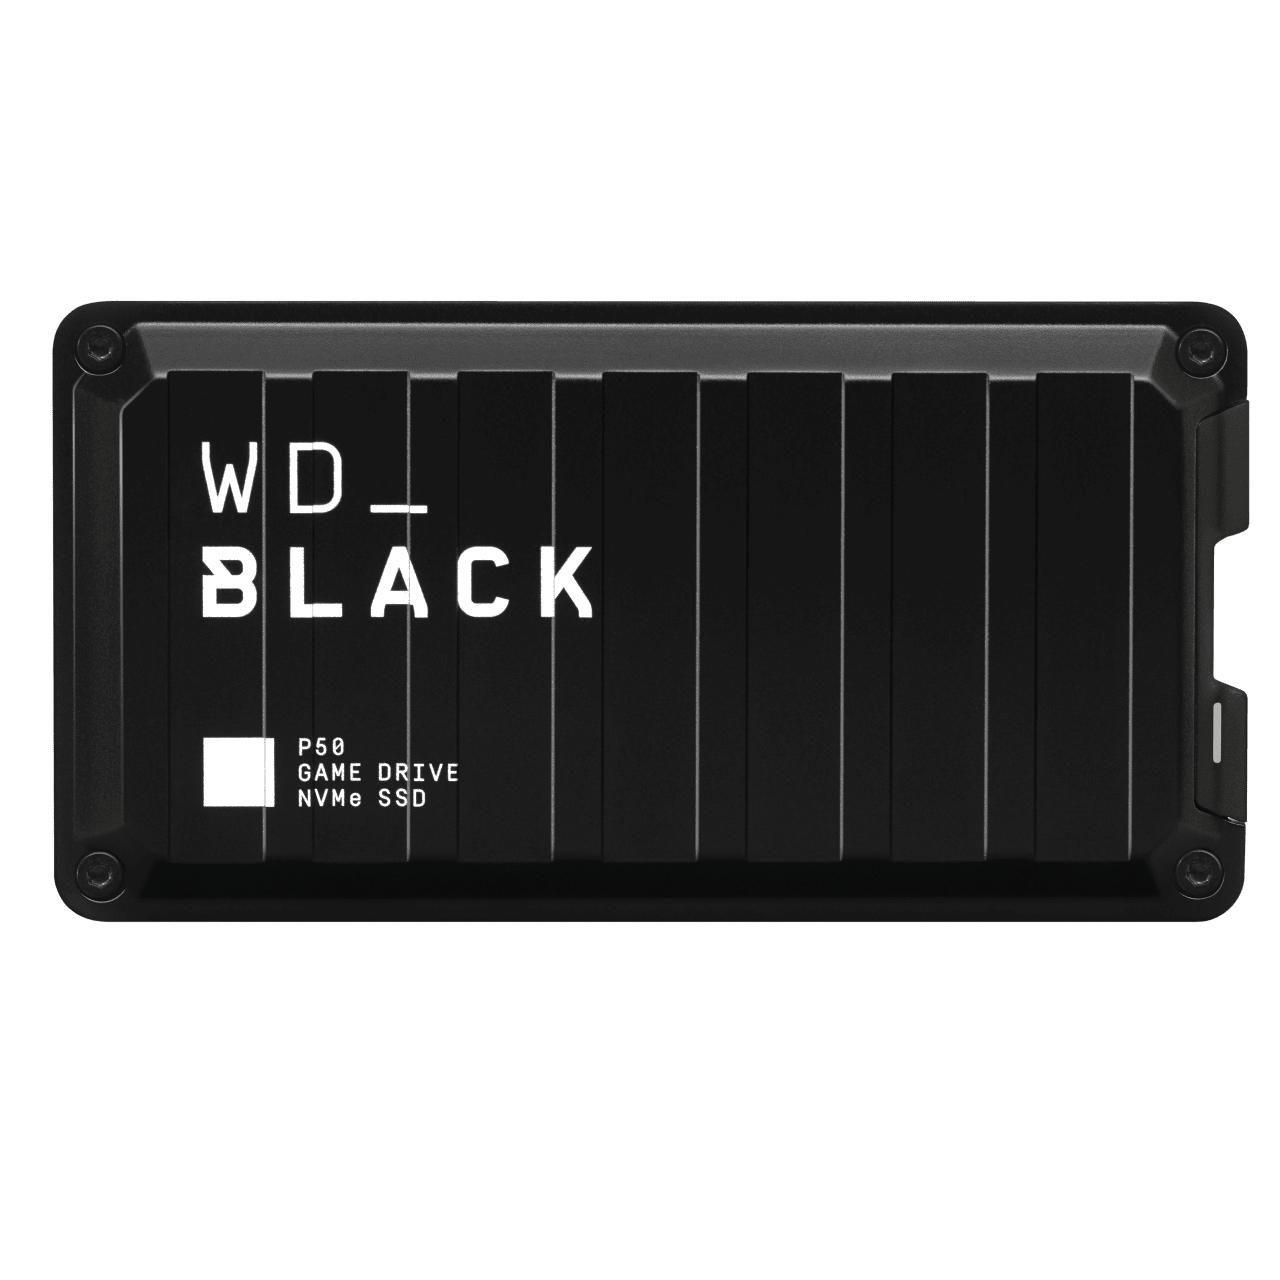 Afbeeldingen van BLACK P50 Game Drive 4TB SSD - WDBA3S0040BBK-WESN